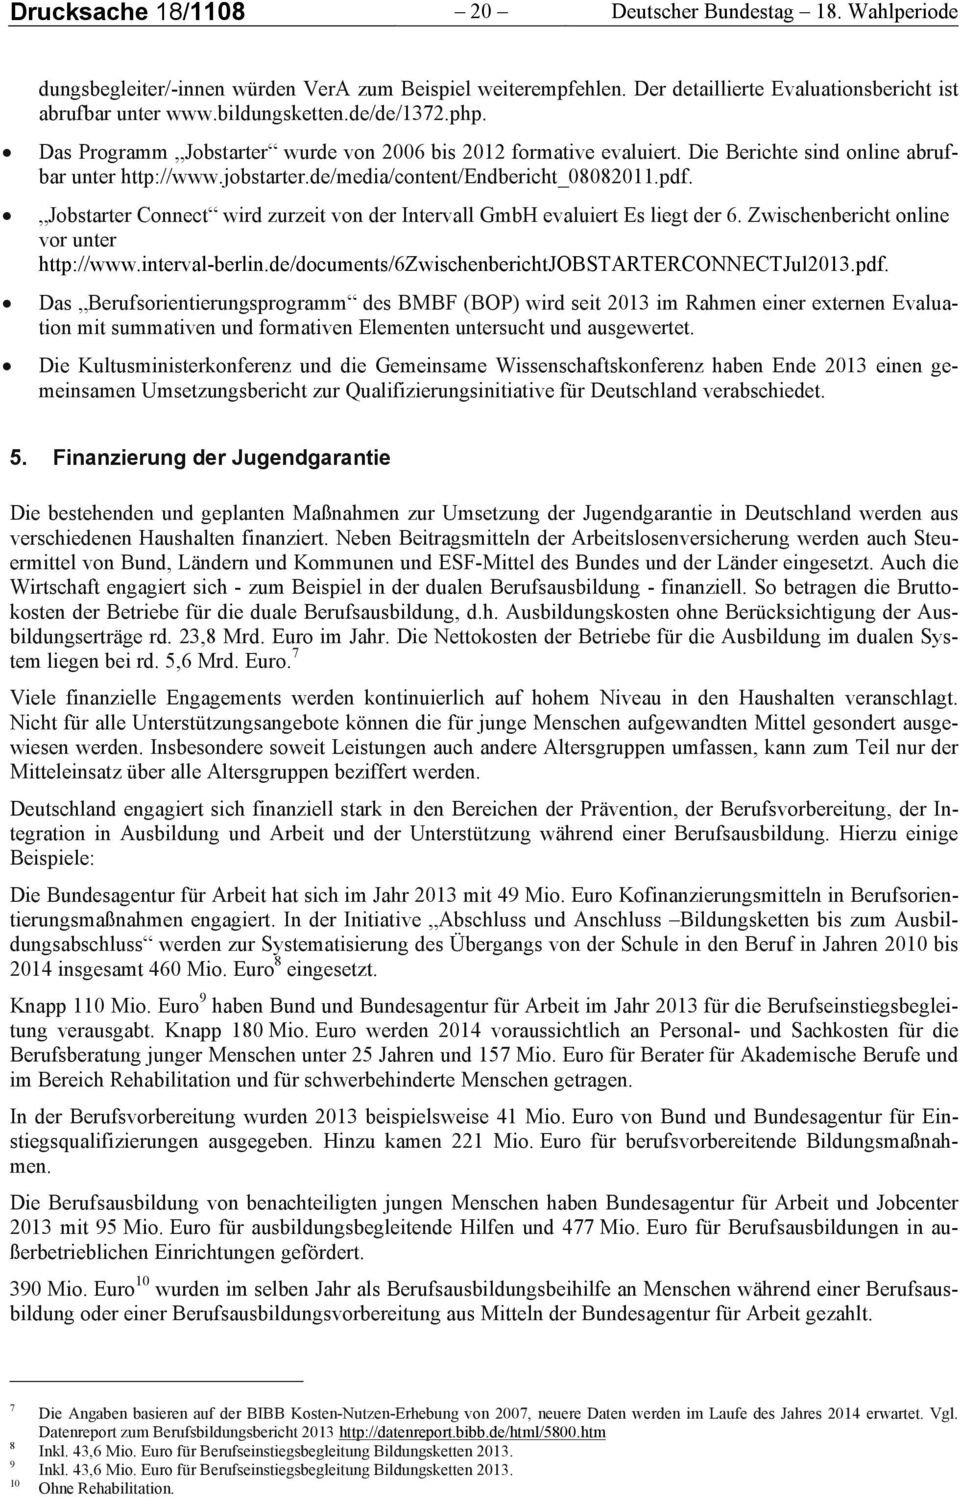 Jobstarter Connect wird zurzeit von der Intervall GmbH evaluiert Es liegt der 6. Zwischenbericht online vor unter http://www.interval-berlin.de/documents/6zwischenberichtjobstarterconnectjul2013.pdf.